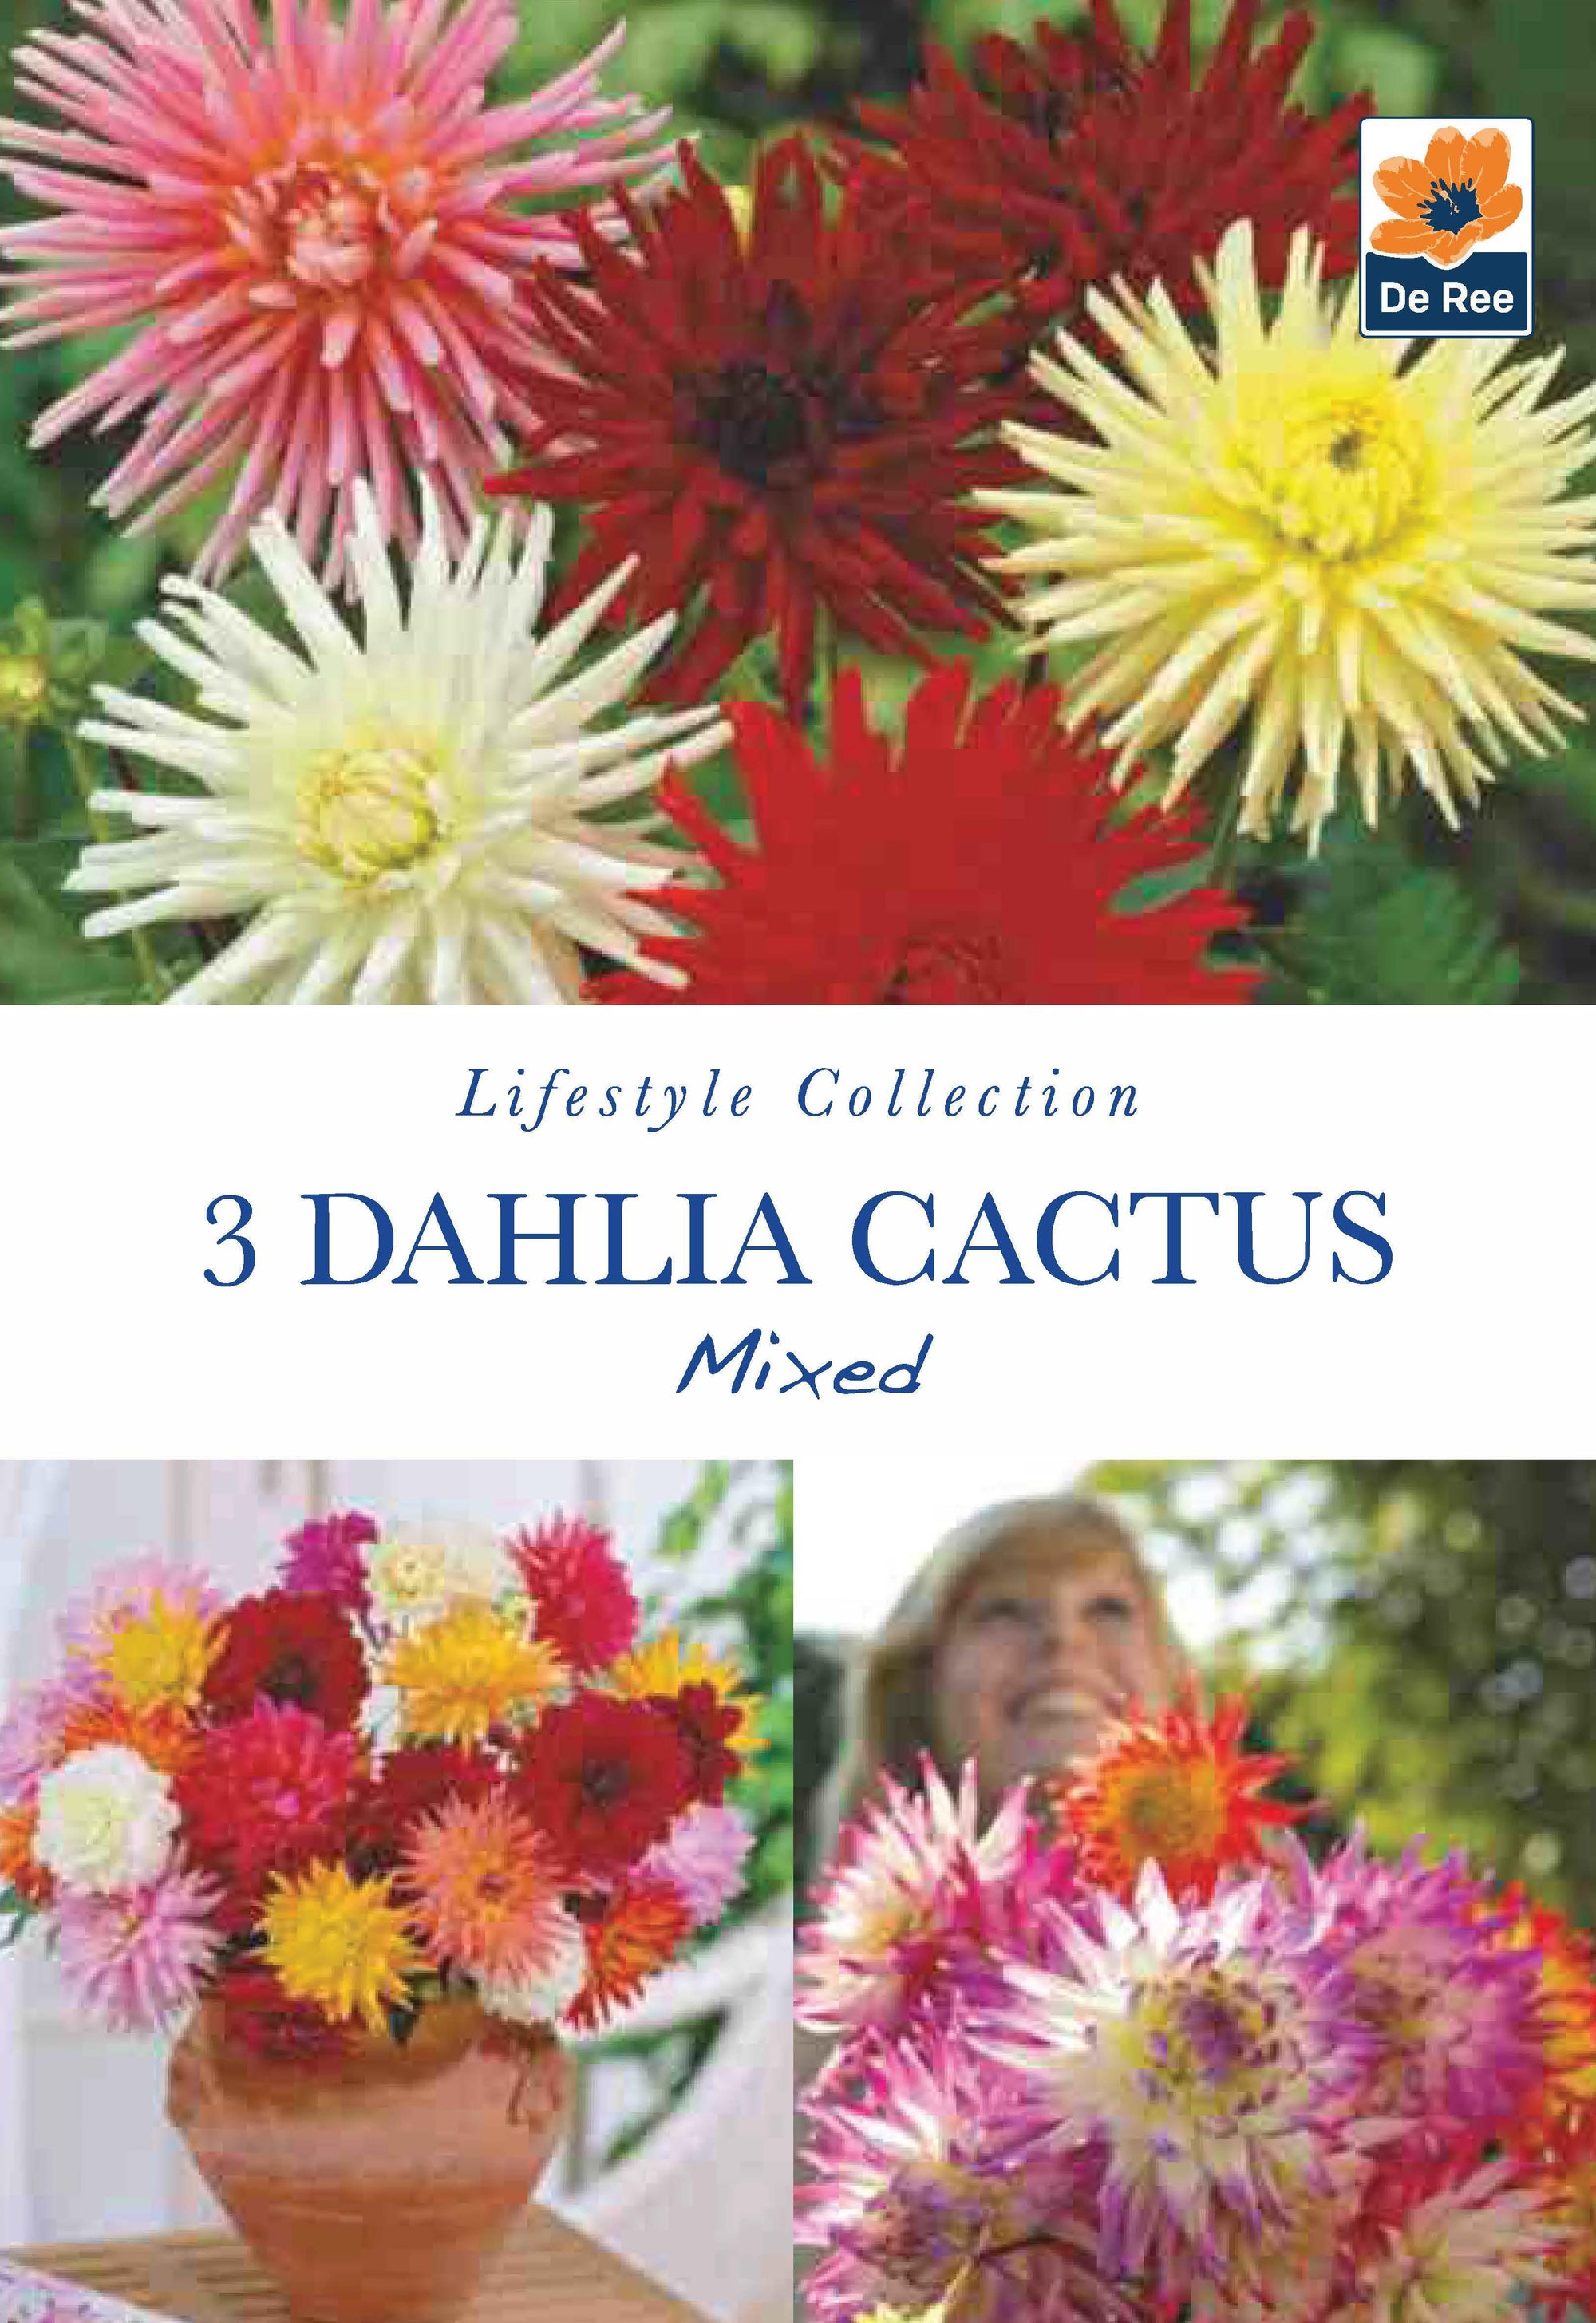 Dahlia Cactus Mixed (2 Tubers)